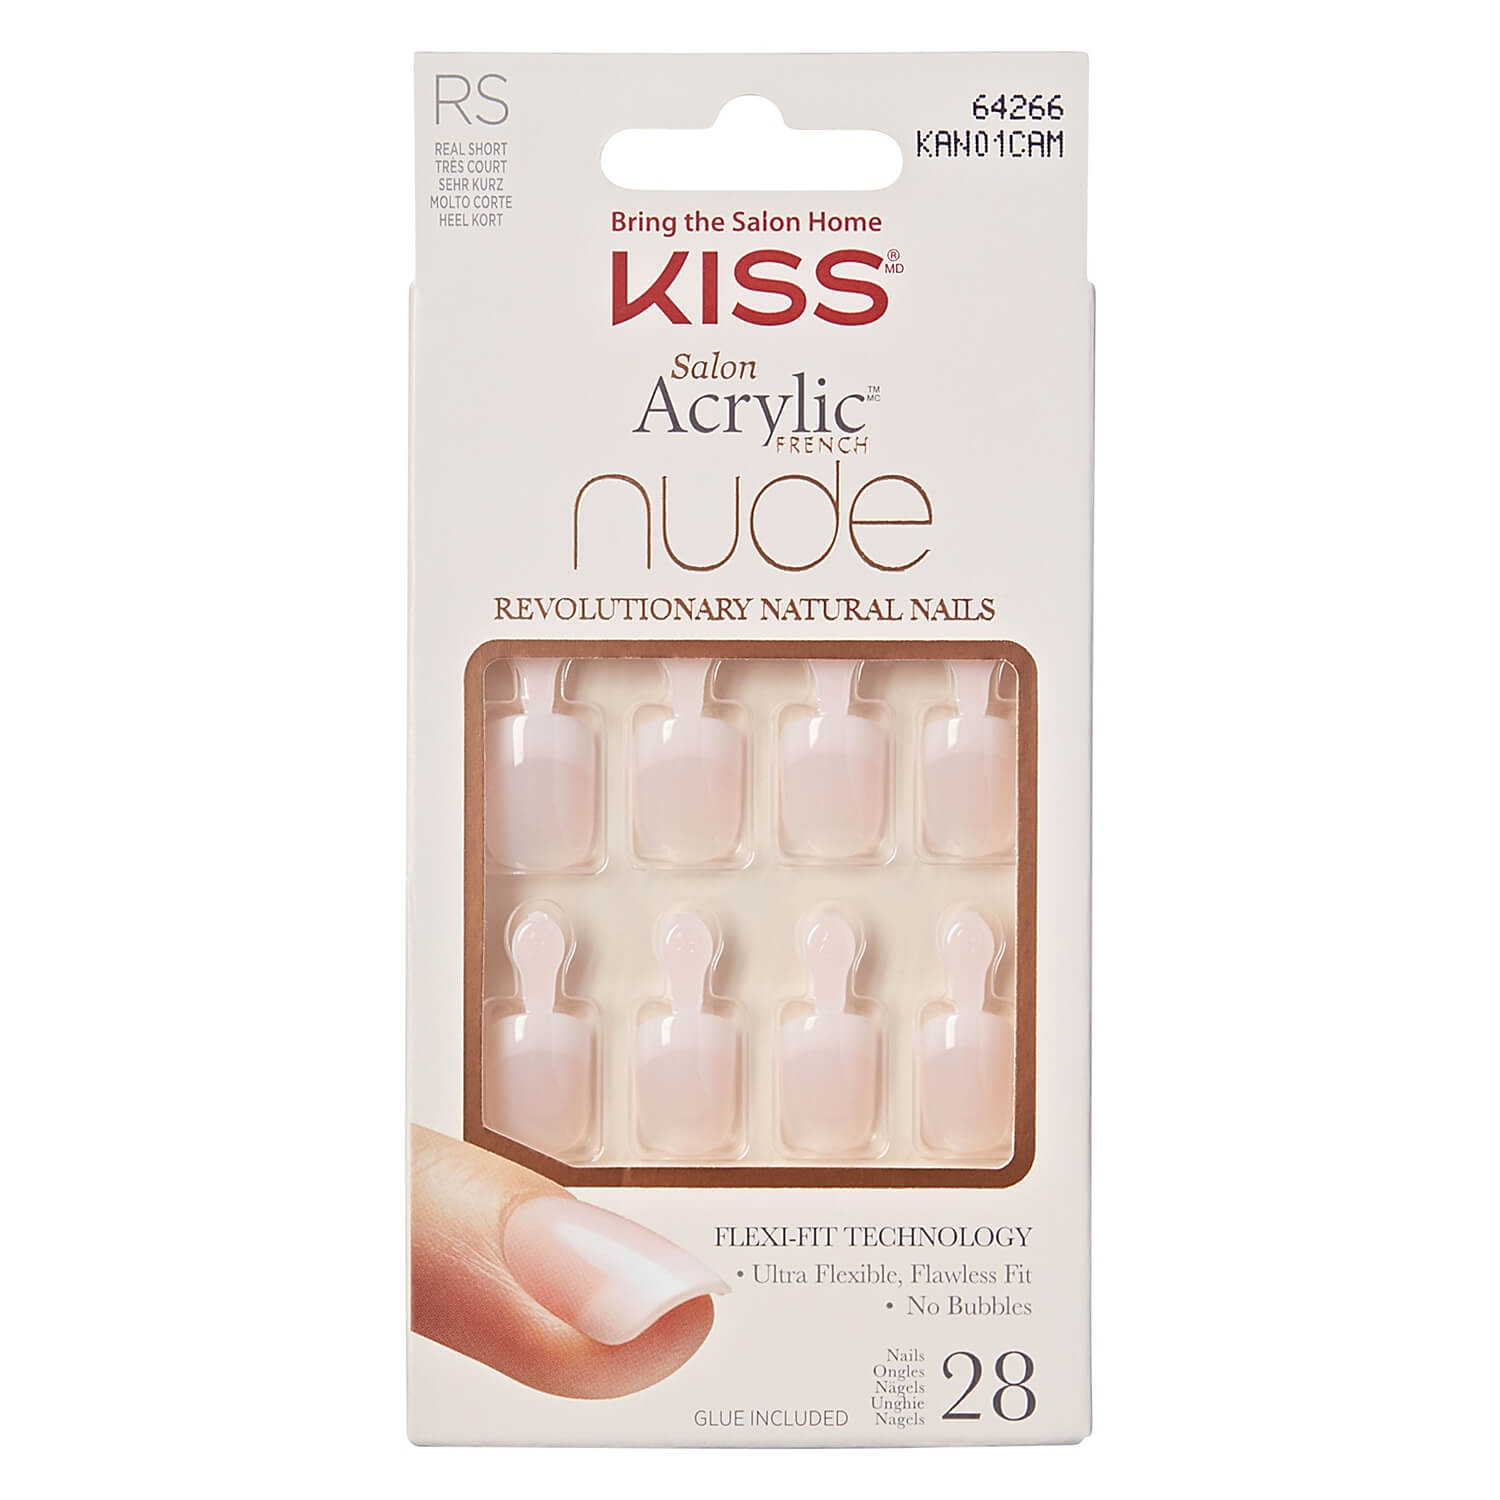 Produktbild von KISS Nails - Salon Acryl Nude Breathtaking